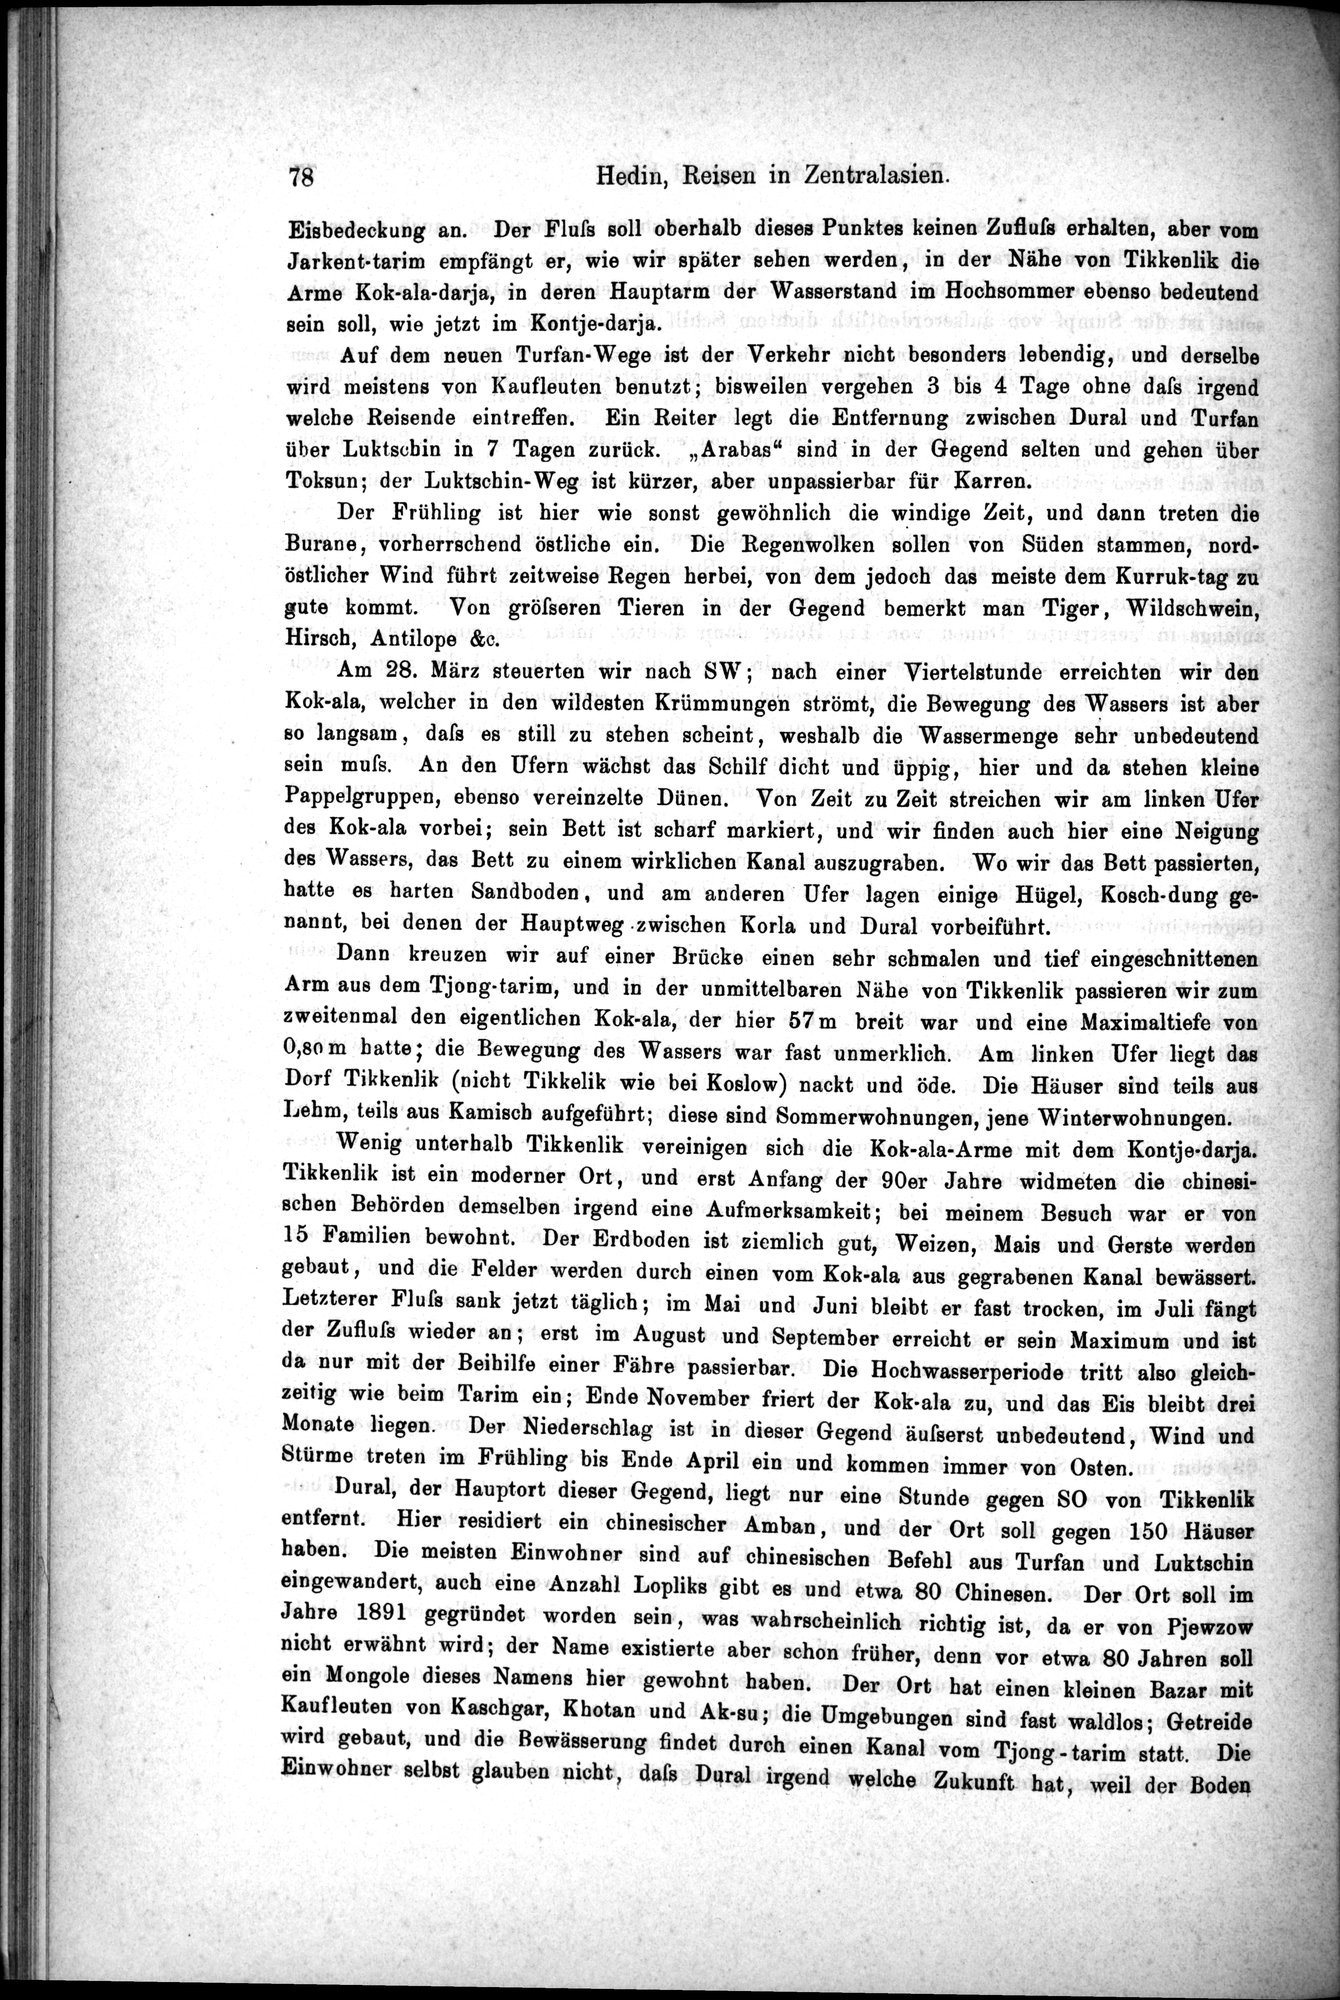 Die Geographische-Wissenschaftlichen Ergebnisse meiner Reisen in Zentralasien, 1894-1897 : vol.1 / Page 90 (Grayscale High Resolution Image)